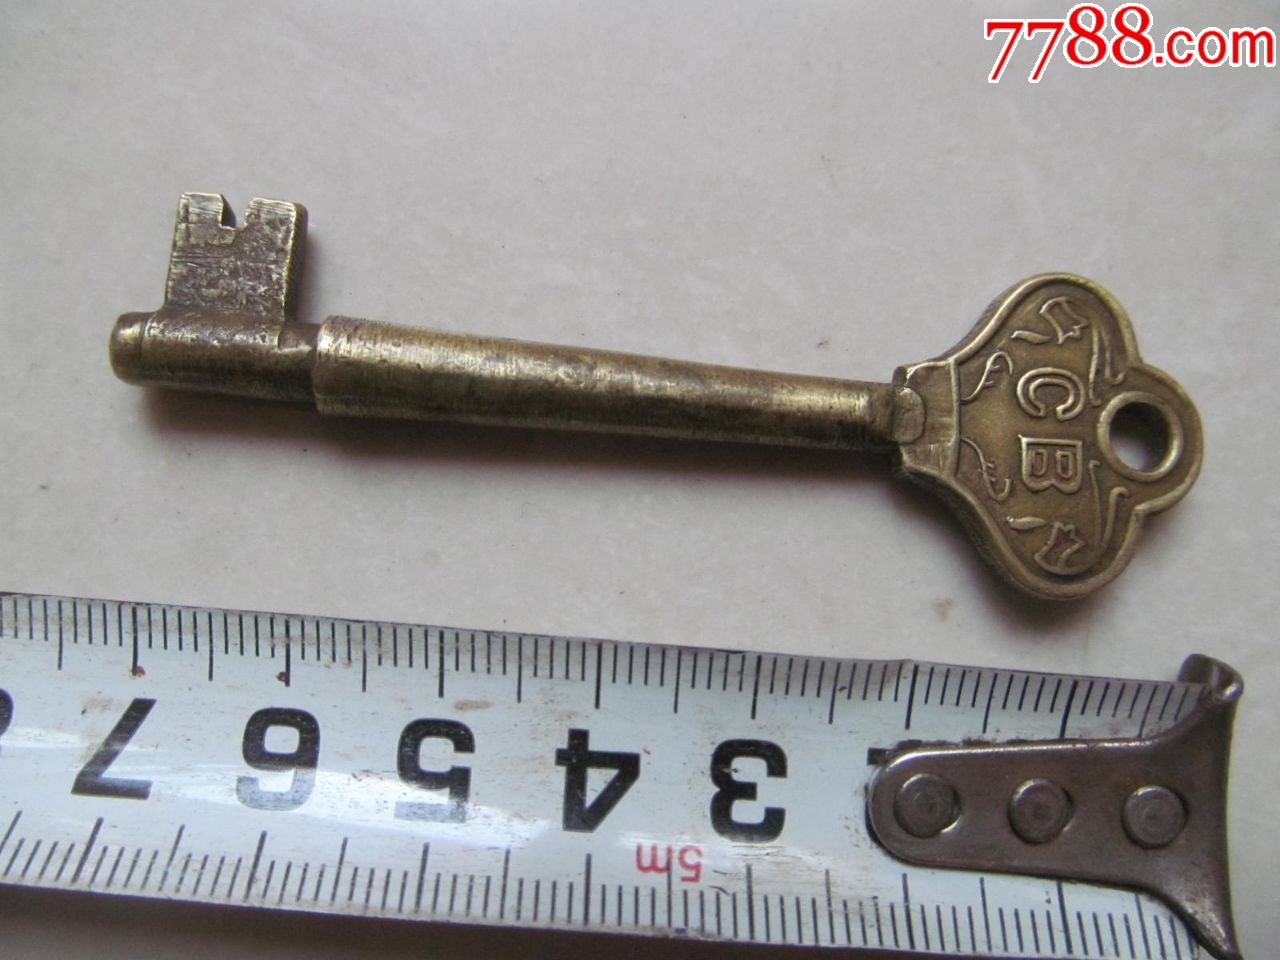 老铜钥匙,上写有中国船用的拼音,有铁锚,另一